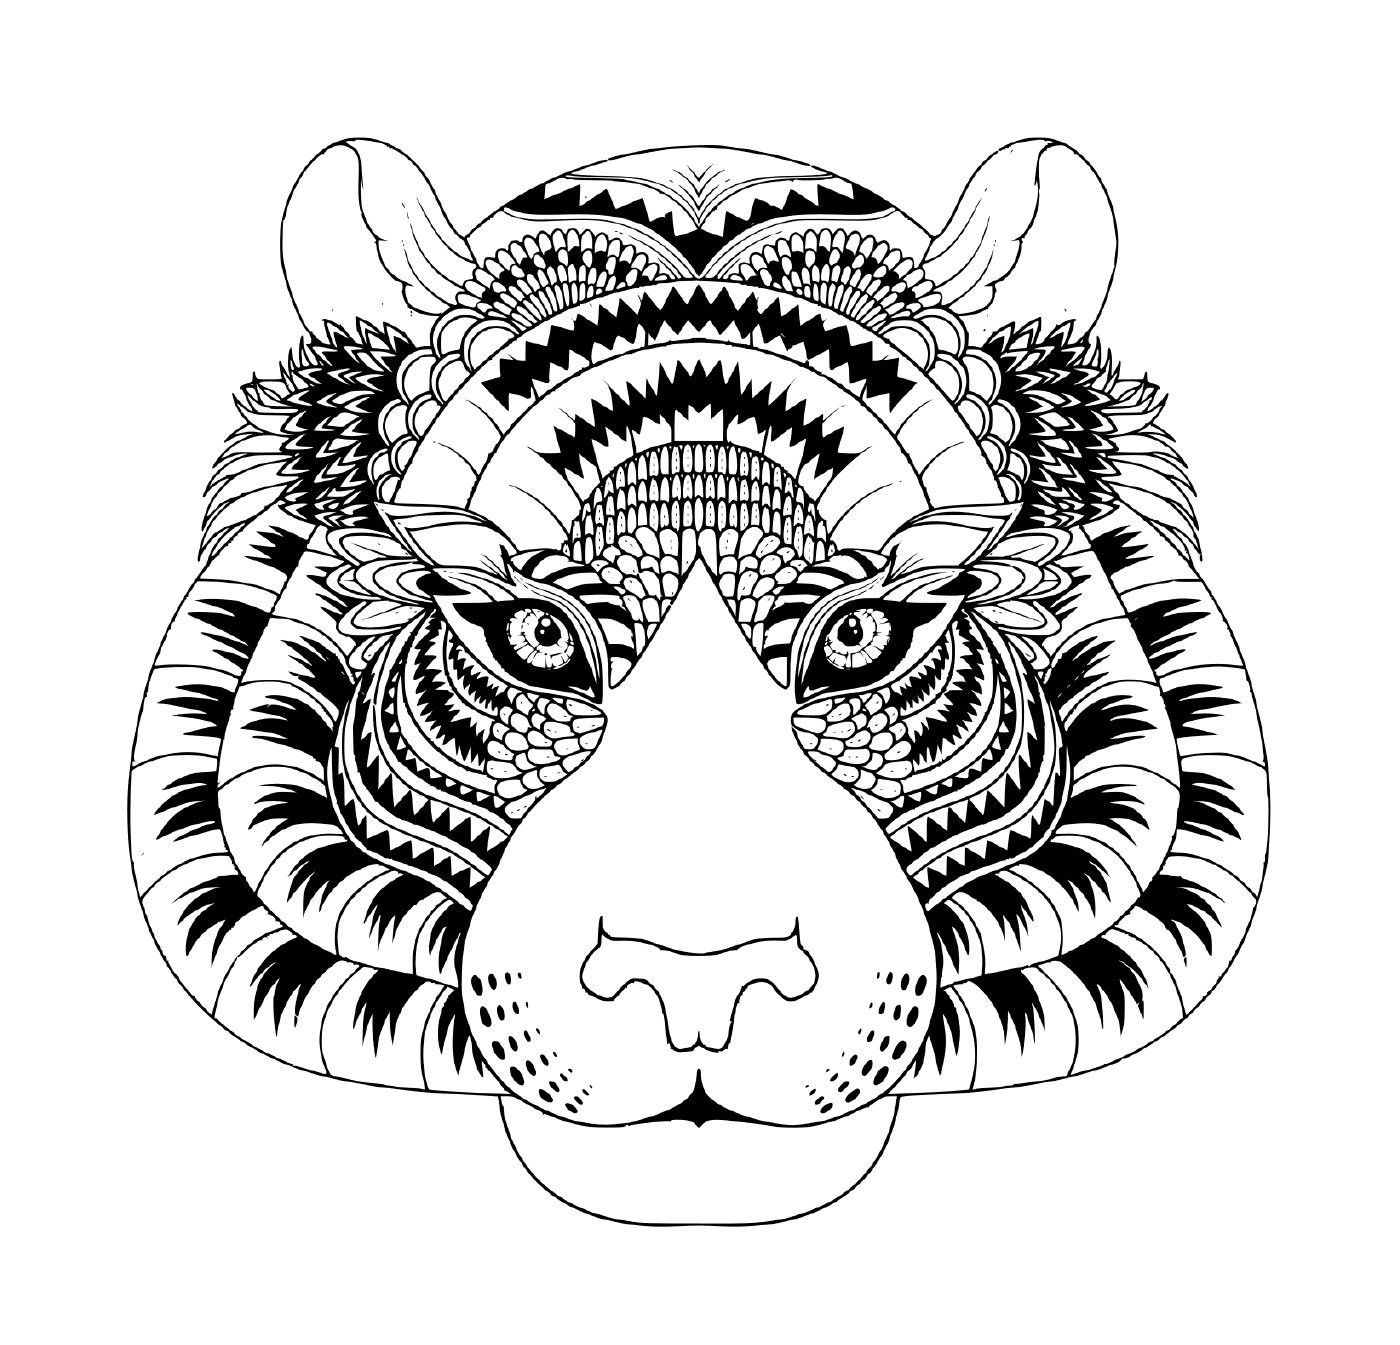  a cabeça de um tigre com detalhes zentângulo 